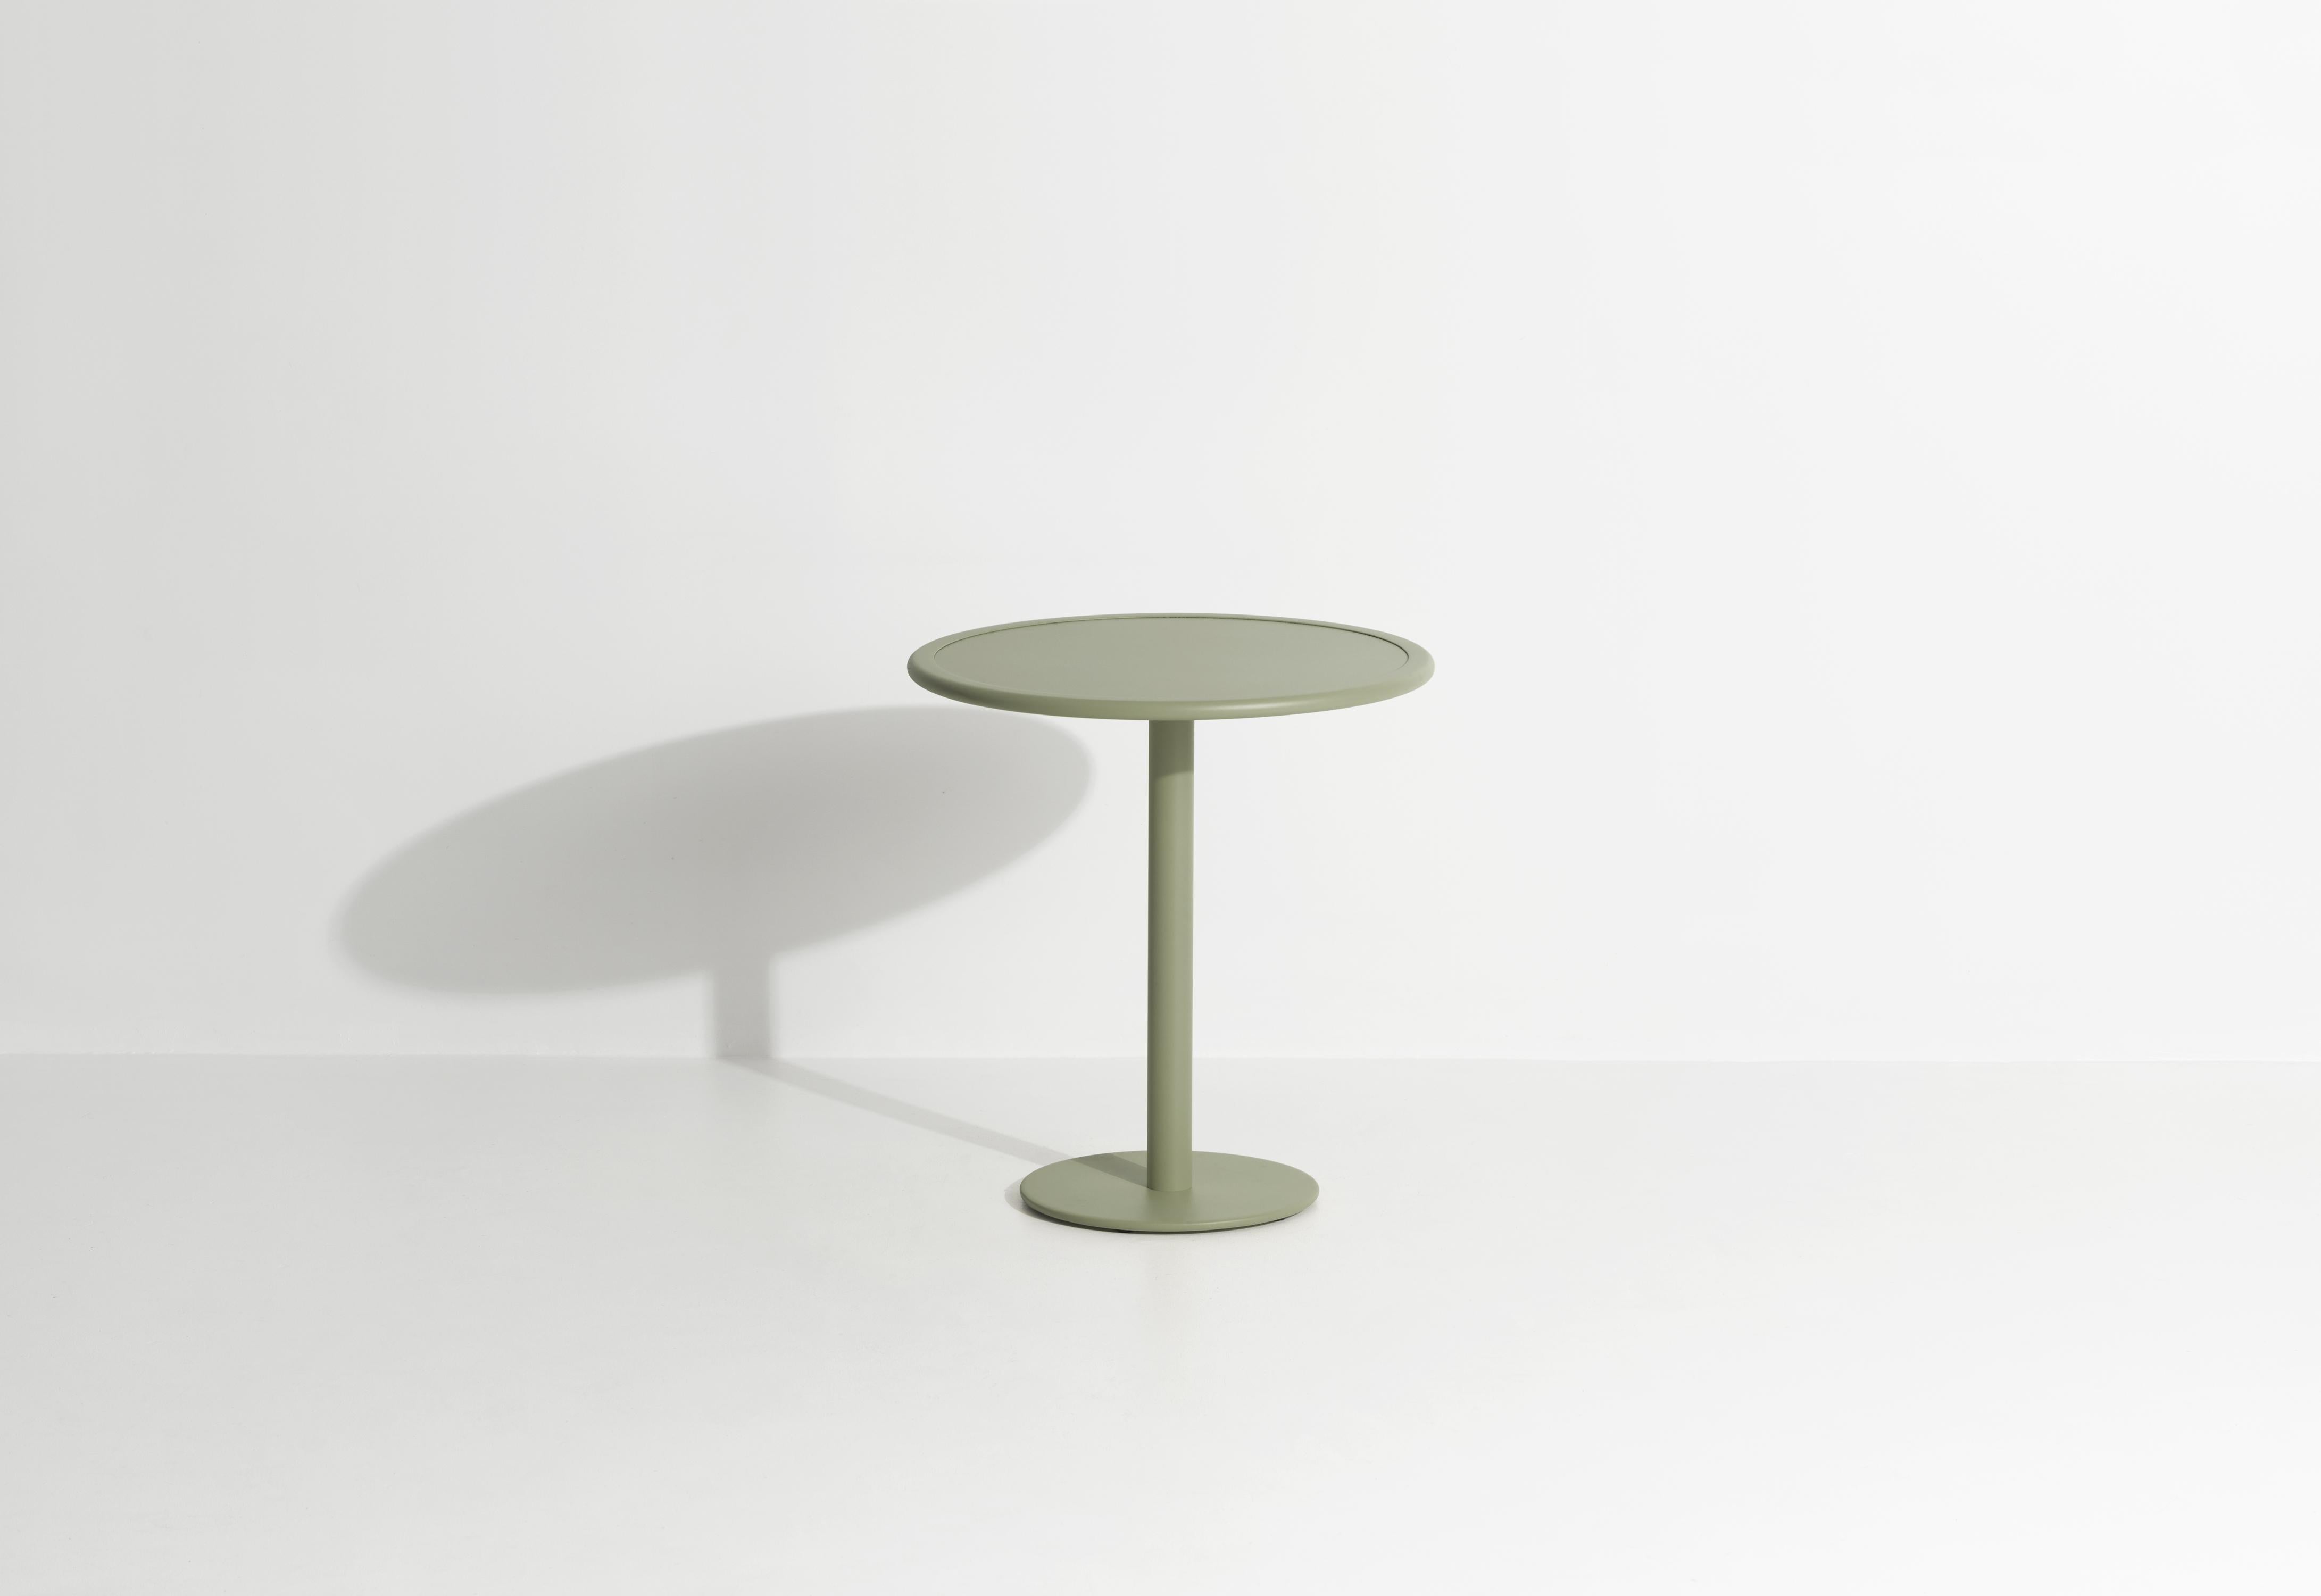 Petite Friture Week-End Bistro Round Dining Table en aluminium vert jade par Studio BrichetZiegler, 2017.

La collection week-end est une gamme complète de mobilier d'extérieur, en peinture époxy aluminium grainé, finition mate, qui comprend 18